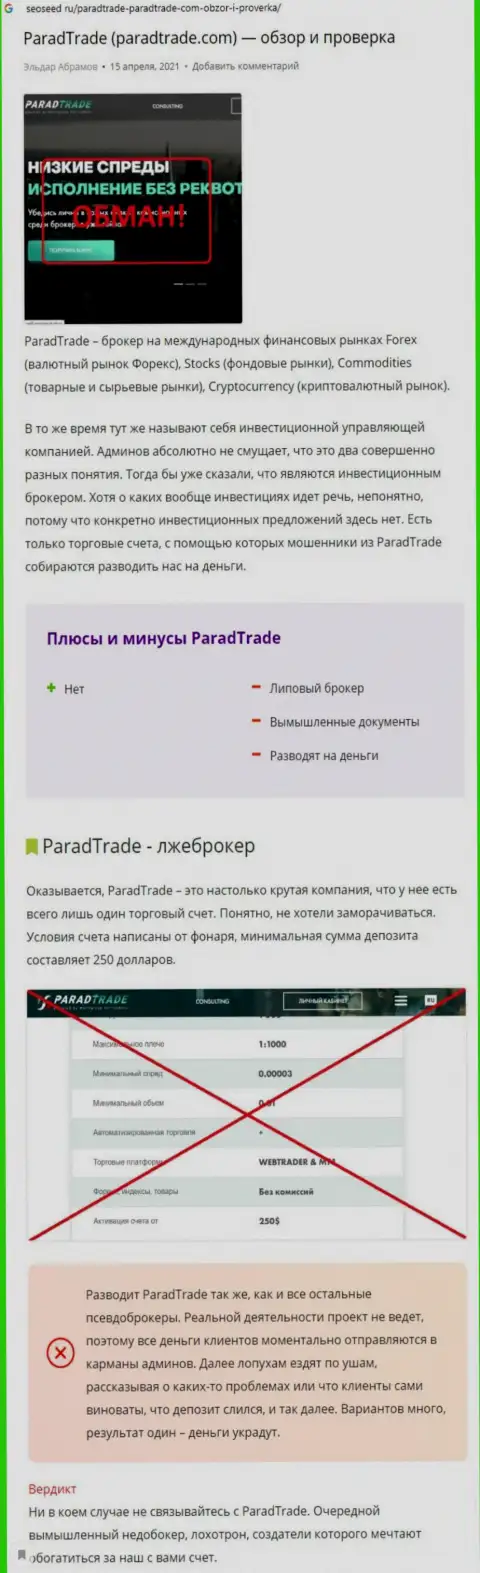 ParadTrade Com мошенничают и не отдают обратно финансовые вложения реальных клиентов (обзорная статья противозаконных действий компании)